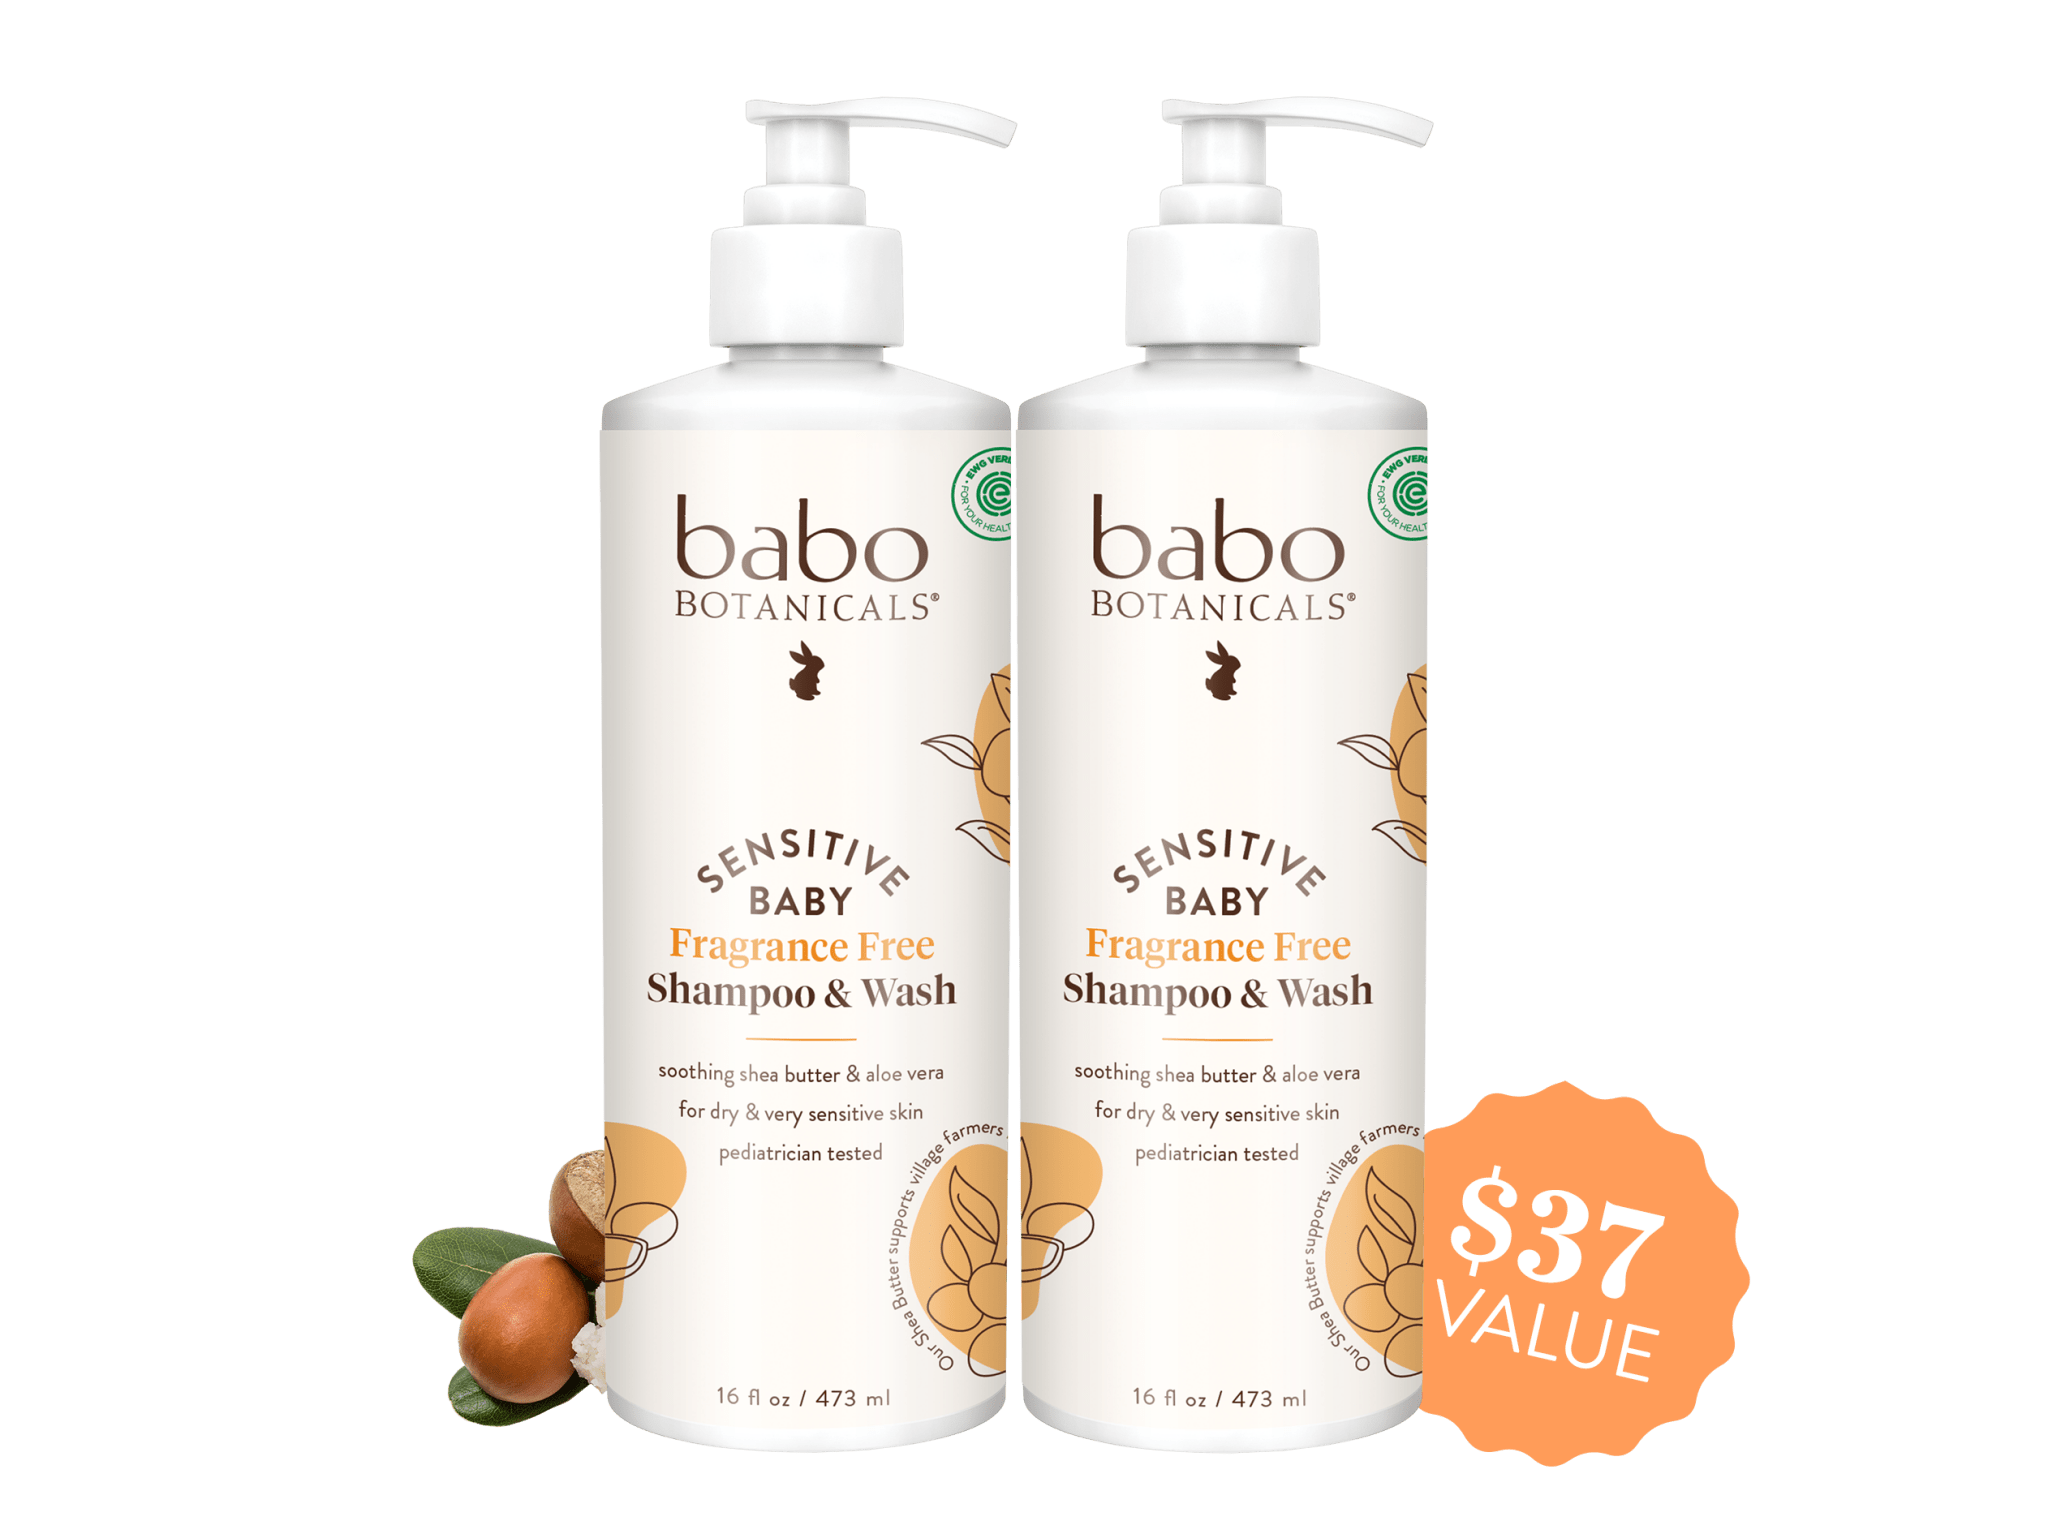 Babo Botanicals Sensitive Baby Shampoo & Wash duo